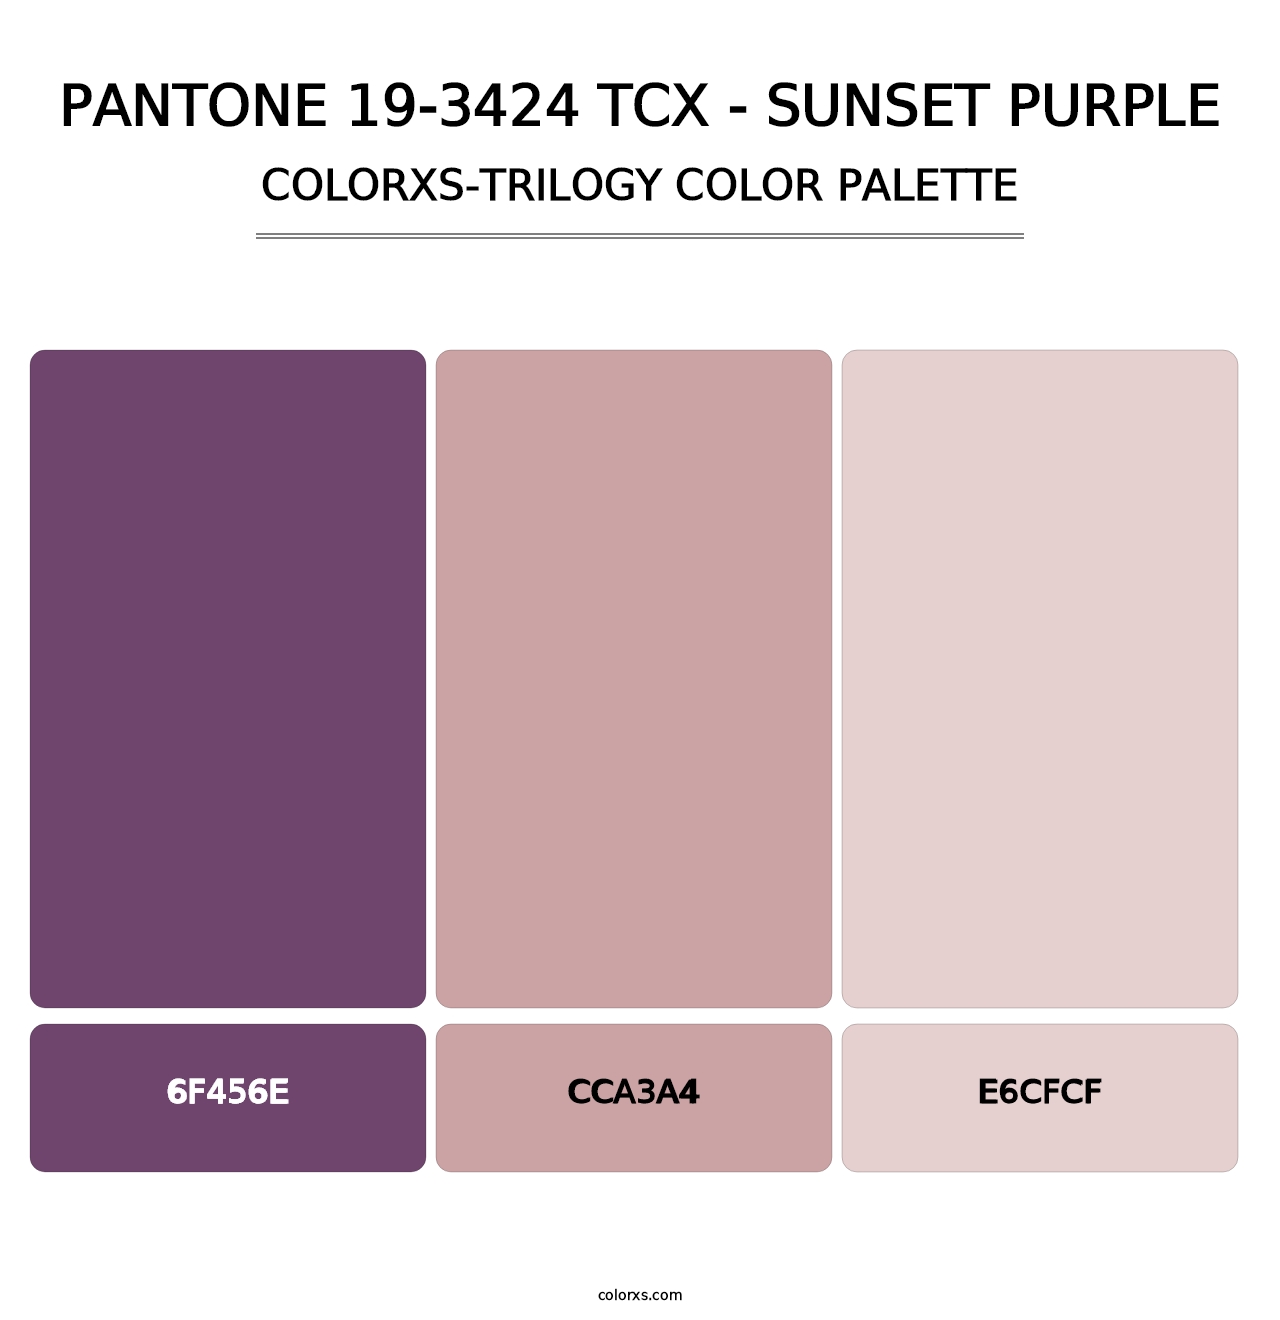 PANTONE 19-3424 TCX - Sunset Purple - Colorxs Trilogy Palette